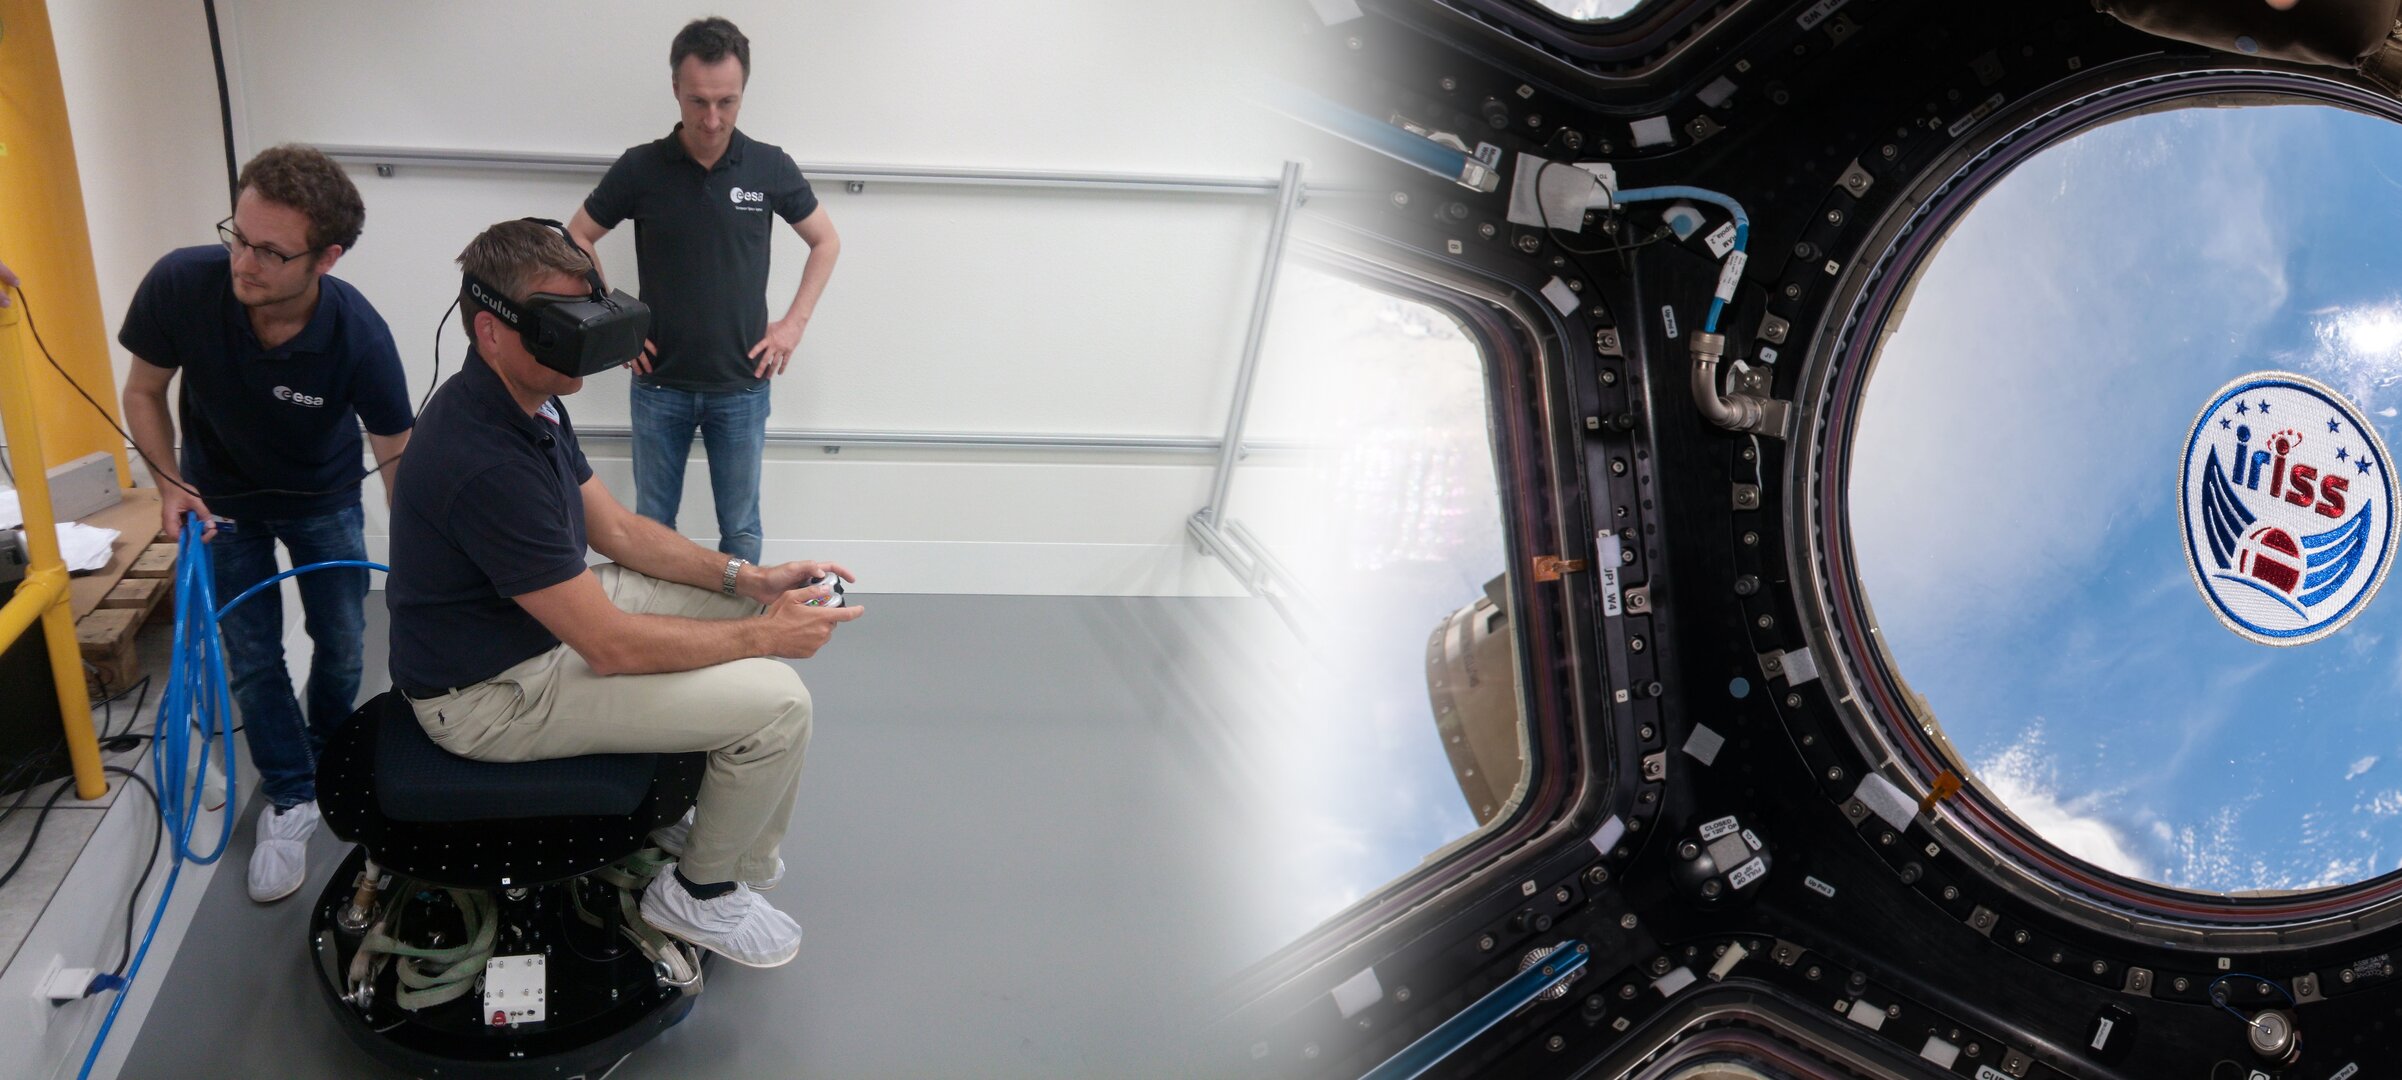 Andreas Mogensen using VR in Orbital Robotics Lab